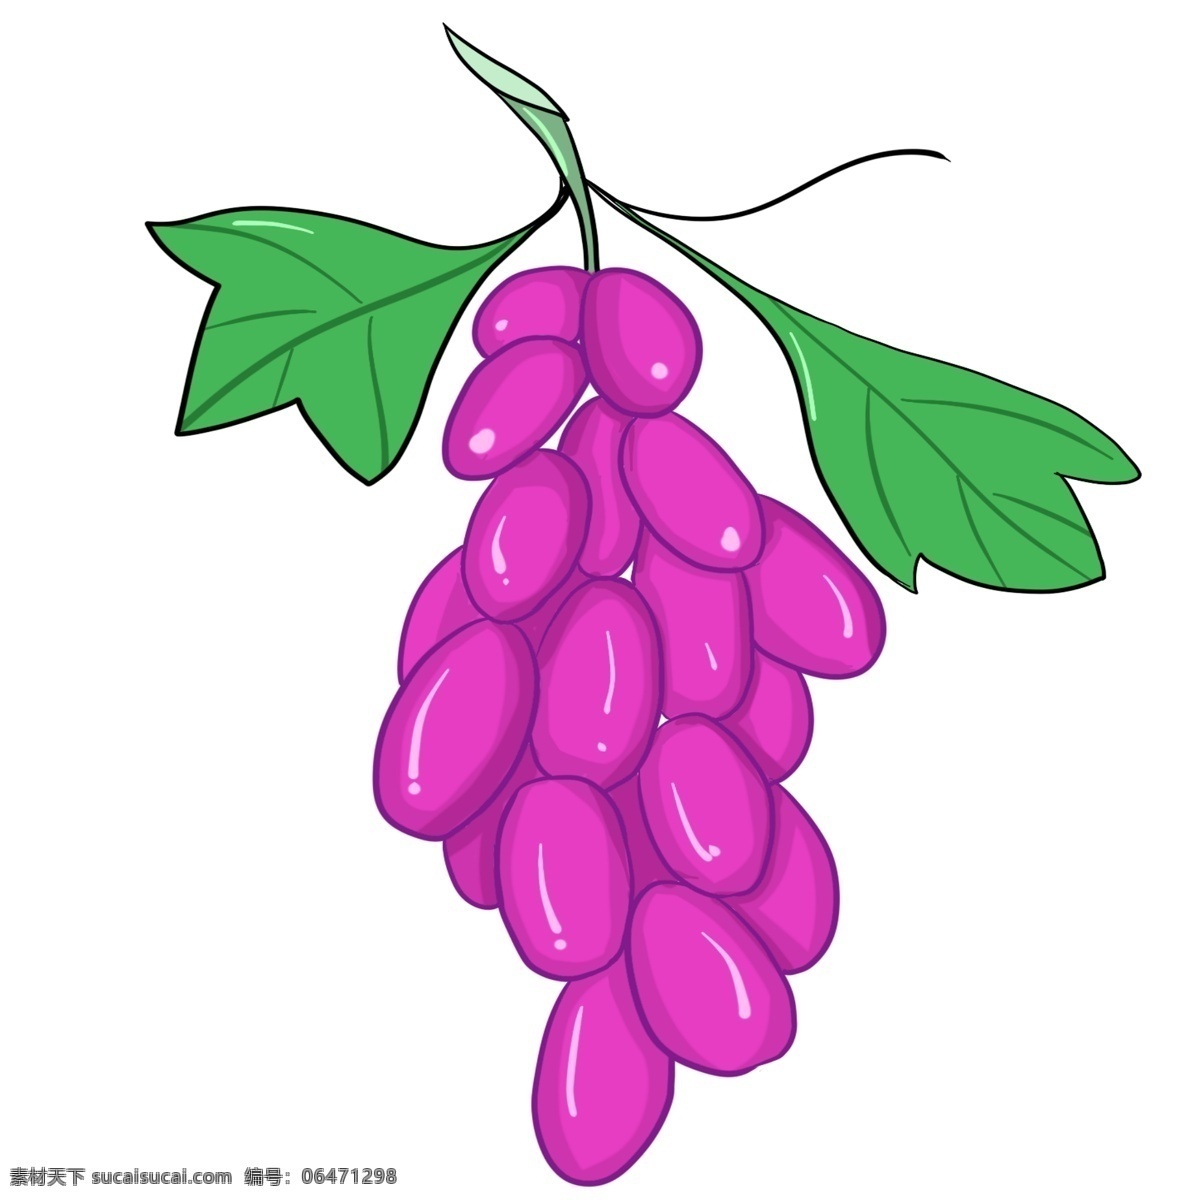 葡萄 种植 植物 生长 绿色食品 紫色 维生素 卡通 装饰画 装饰 大自然 培育 甜 叶子 绿色 可爱 清新 味道 水果